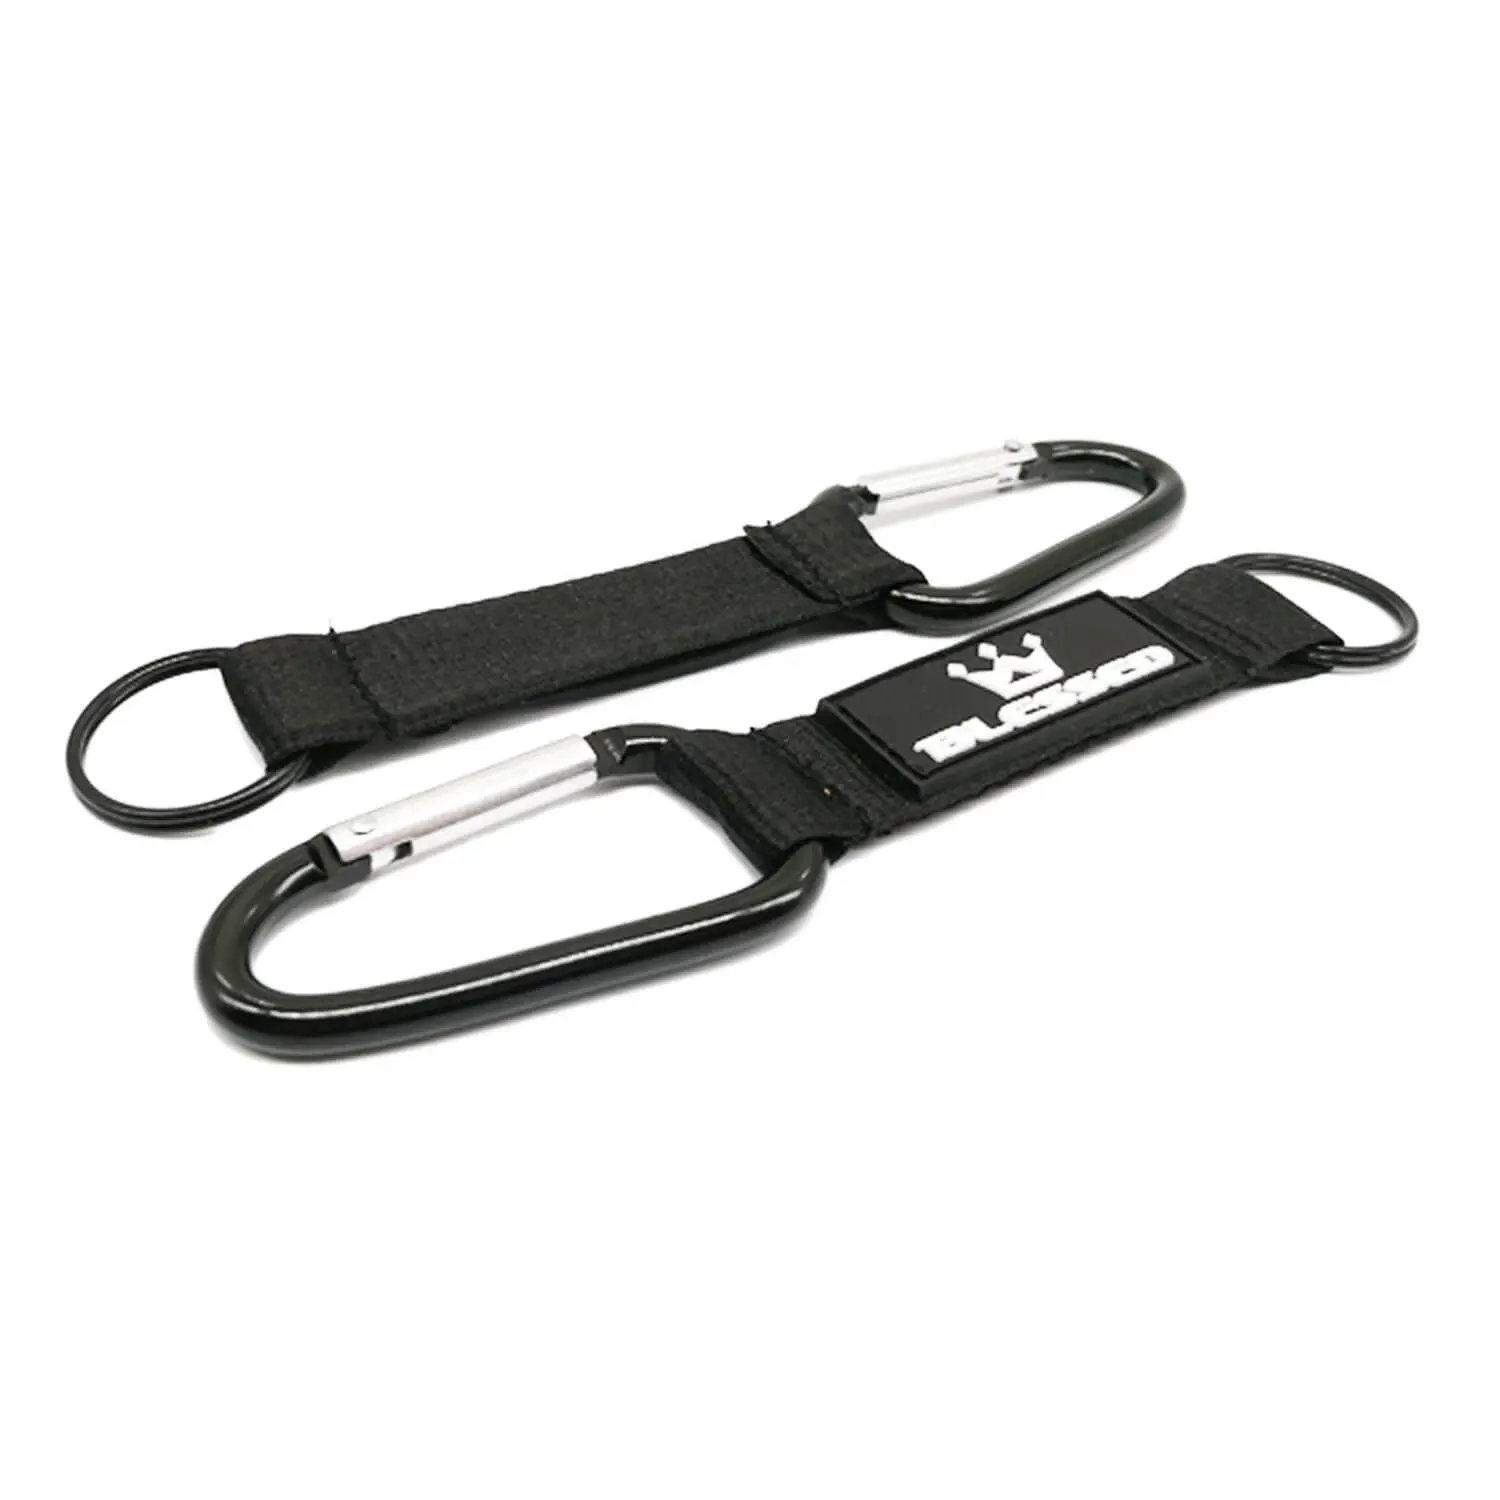 Mousqueton en nylon pour porte-clés personnalisé Porte-monnaie pour badge d'identité et porte-clés de poignet Mousqueton pour porte-clés